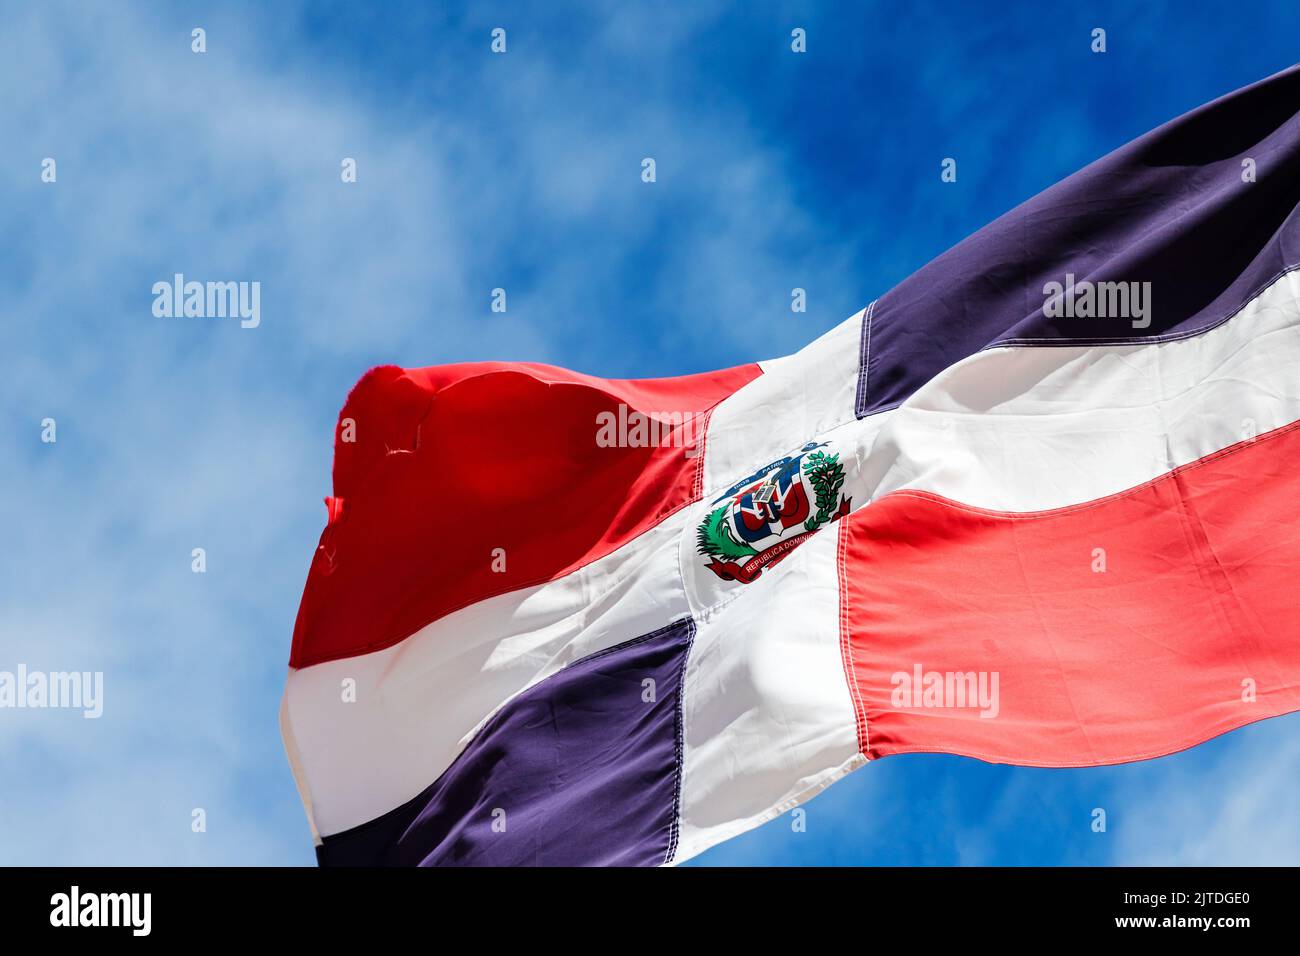 Le drapeau d'Etat de la république dominicaine agite sous un ciel nuageux par une journée ensoleillée, en gros plan Banque D'Images